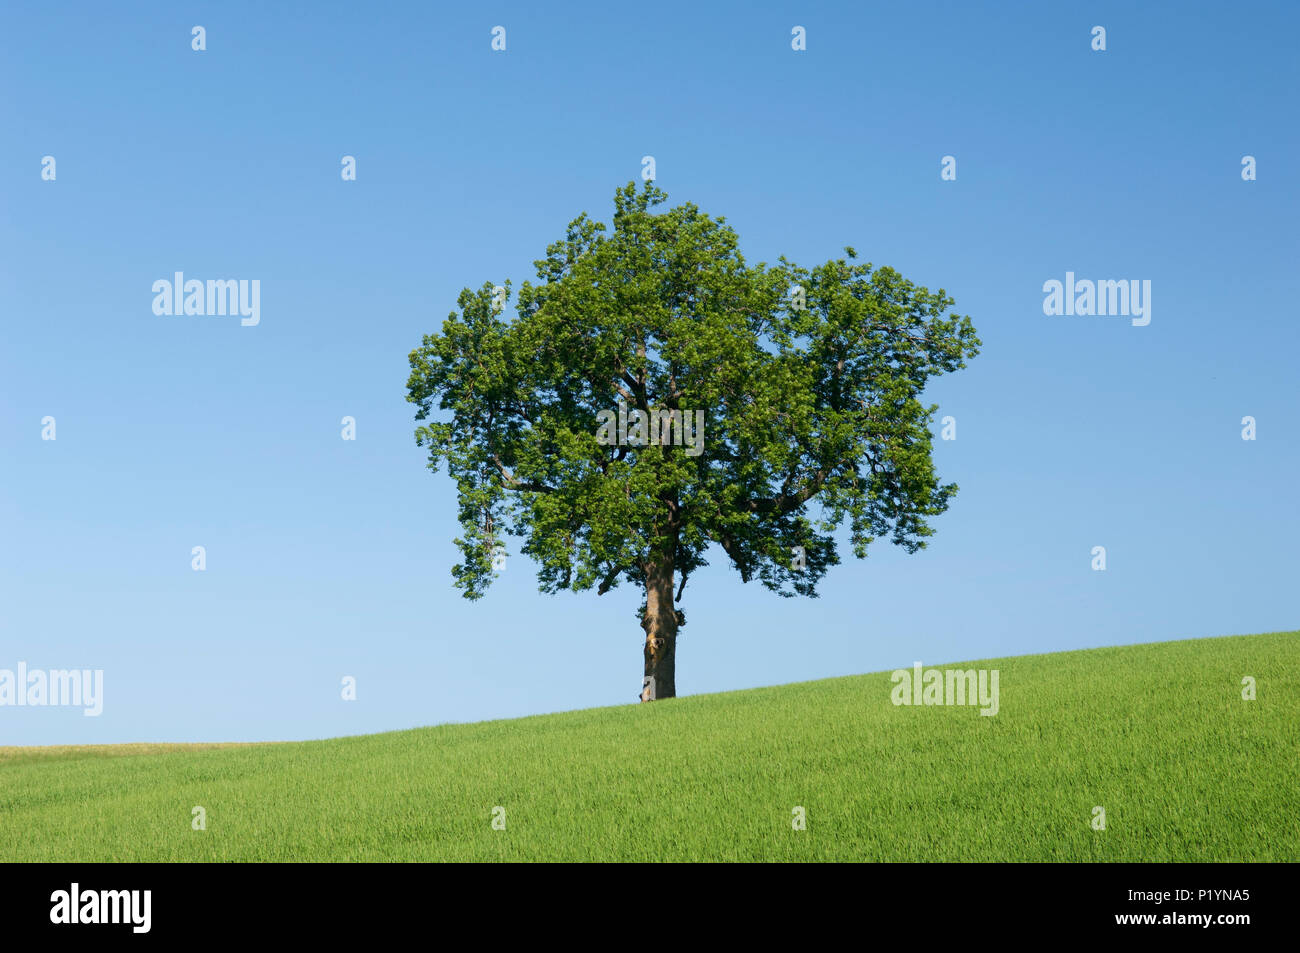 Unico albero in campo verde, contro un cielo azzurro - Scozia, Regno Unito. Foto Stock